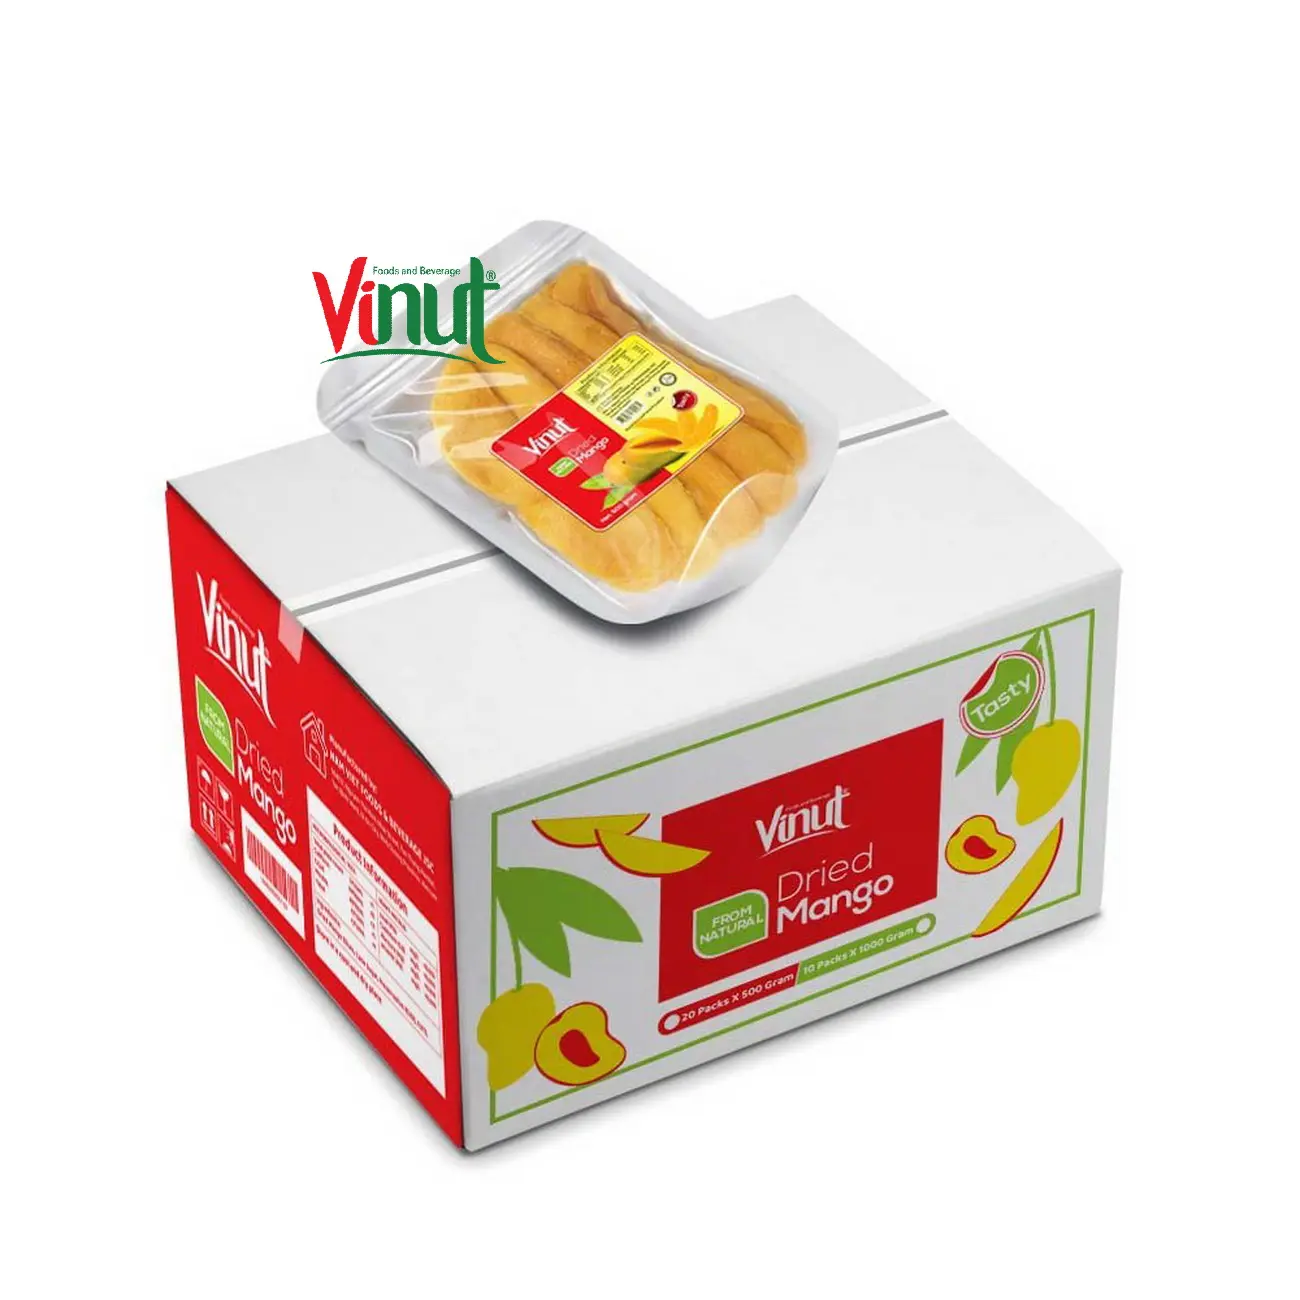 Сушеные фрукты VINUT-20 упаковок x 500 г сушеные манго Премиум-качества от натурального каталога производителя